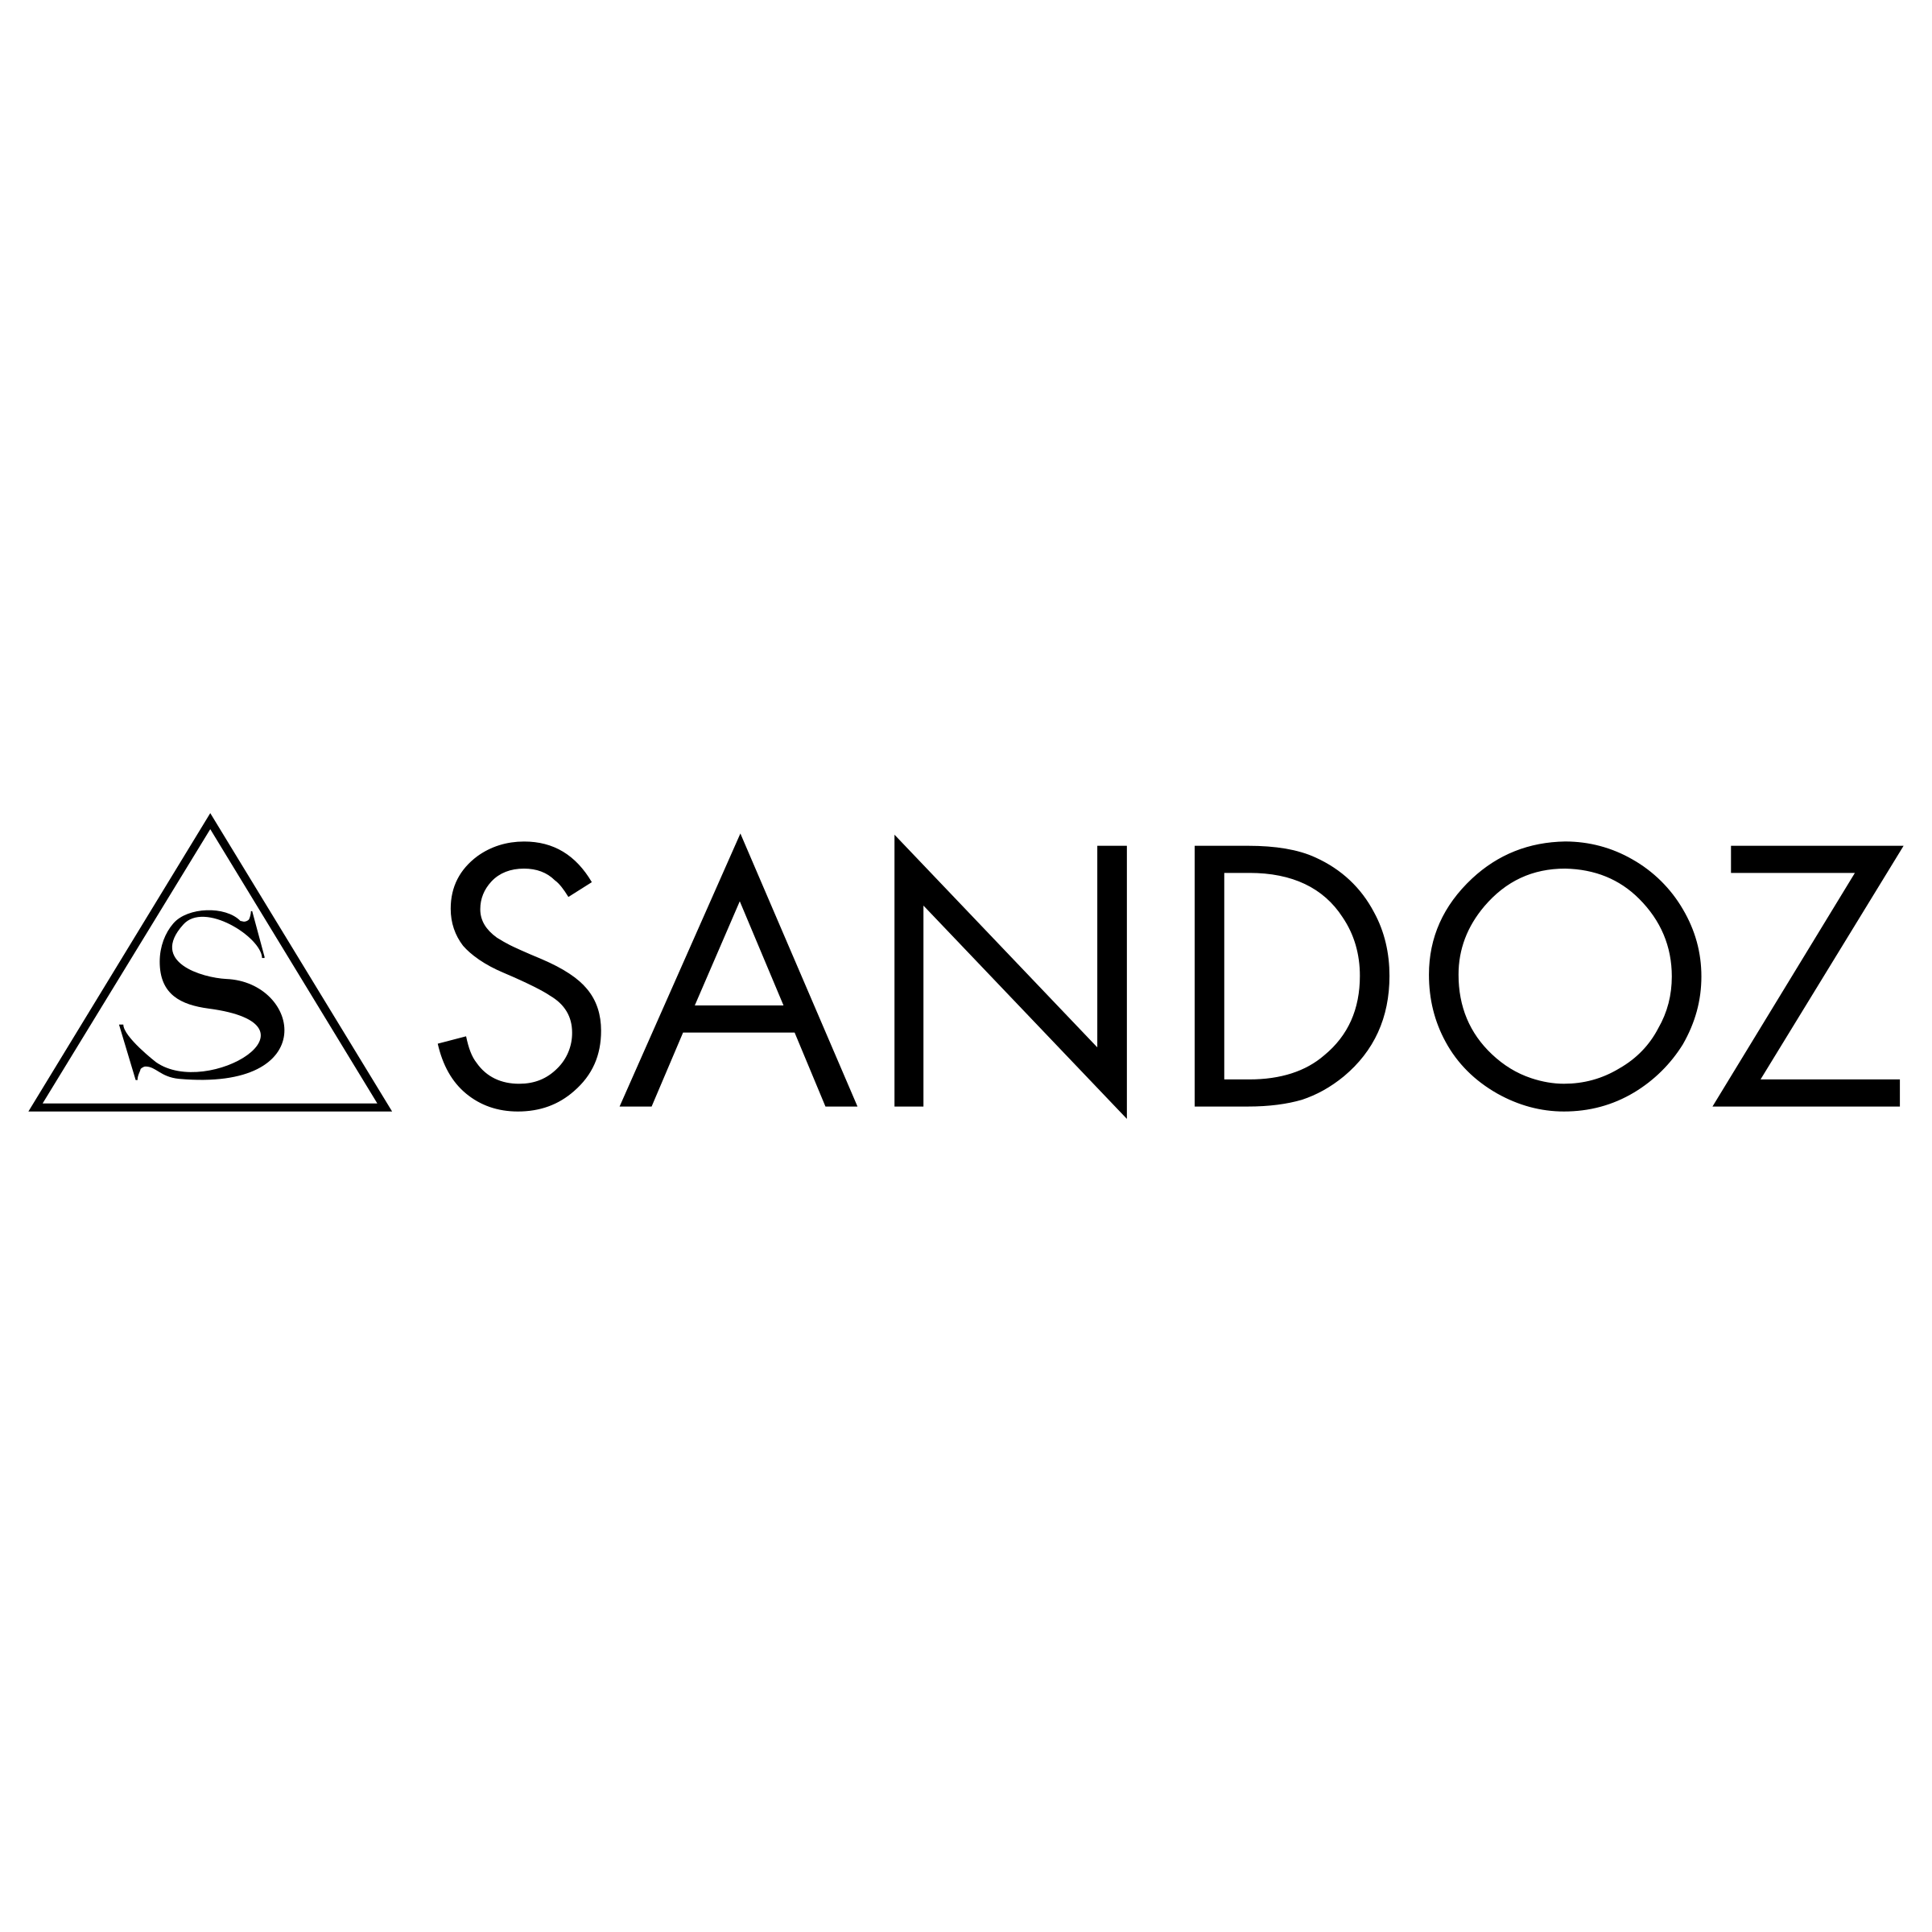 Sandoz Logo - Sandoz Logo PNG Transparent & SVG Vector - Freebie Supply